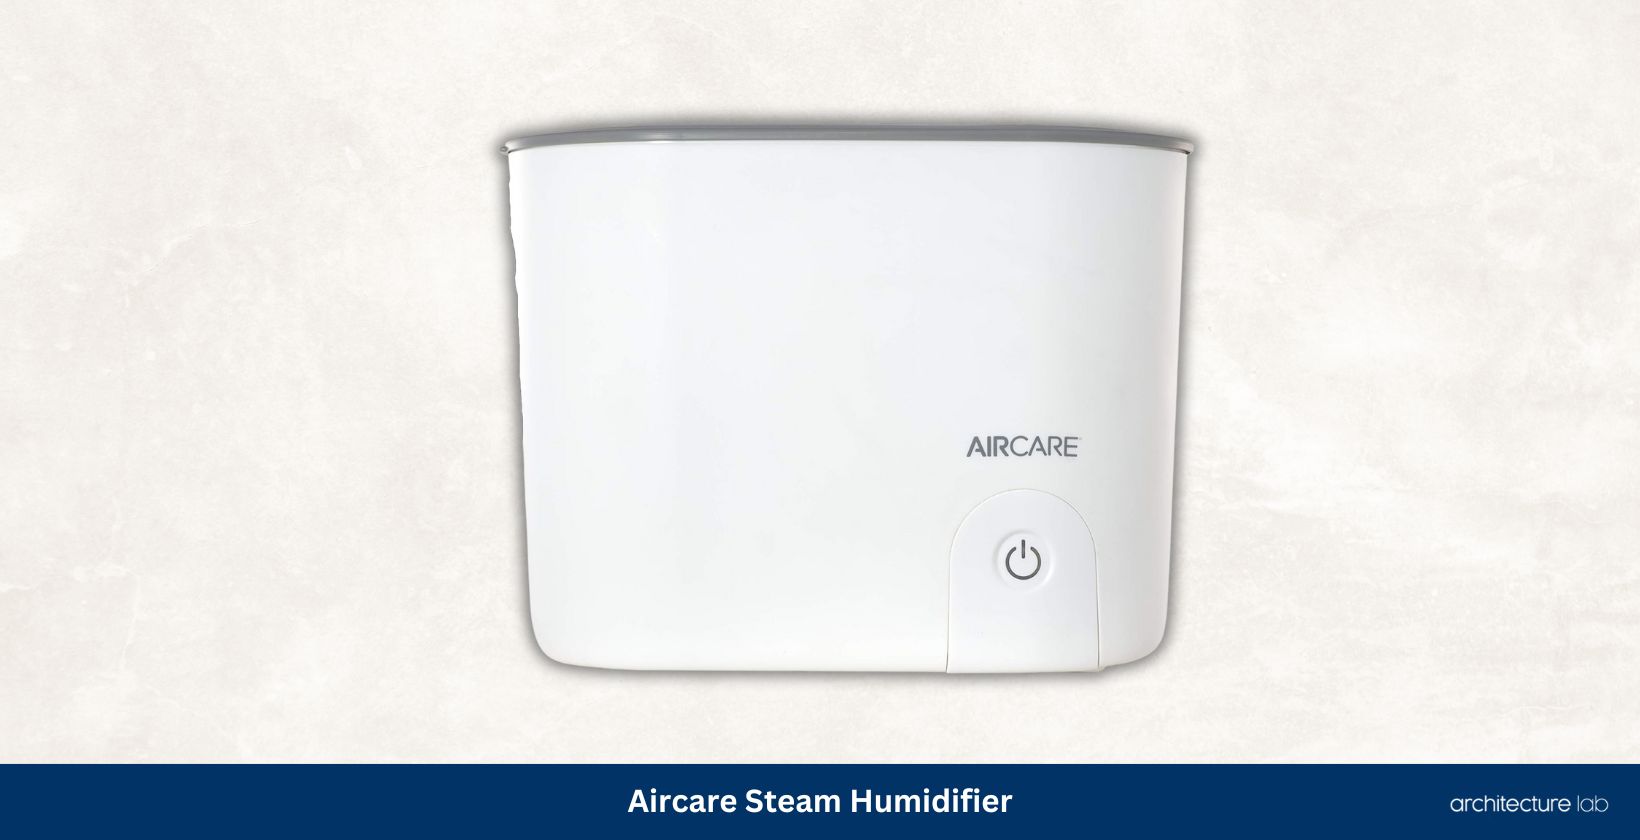 Aircare steam humidifier